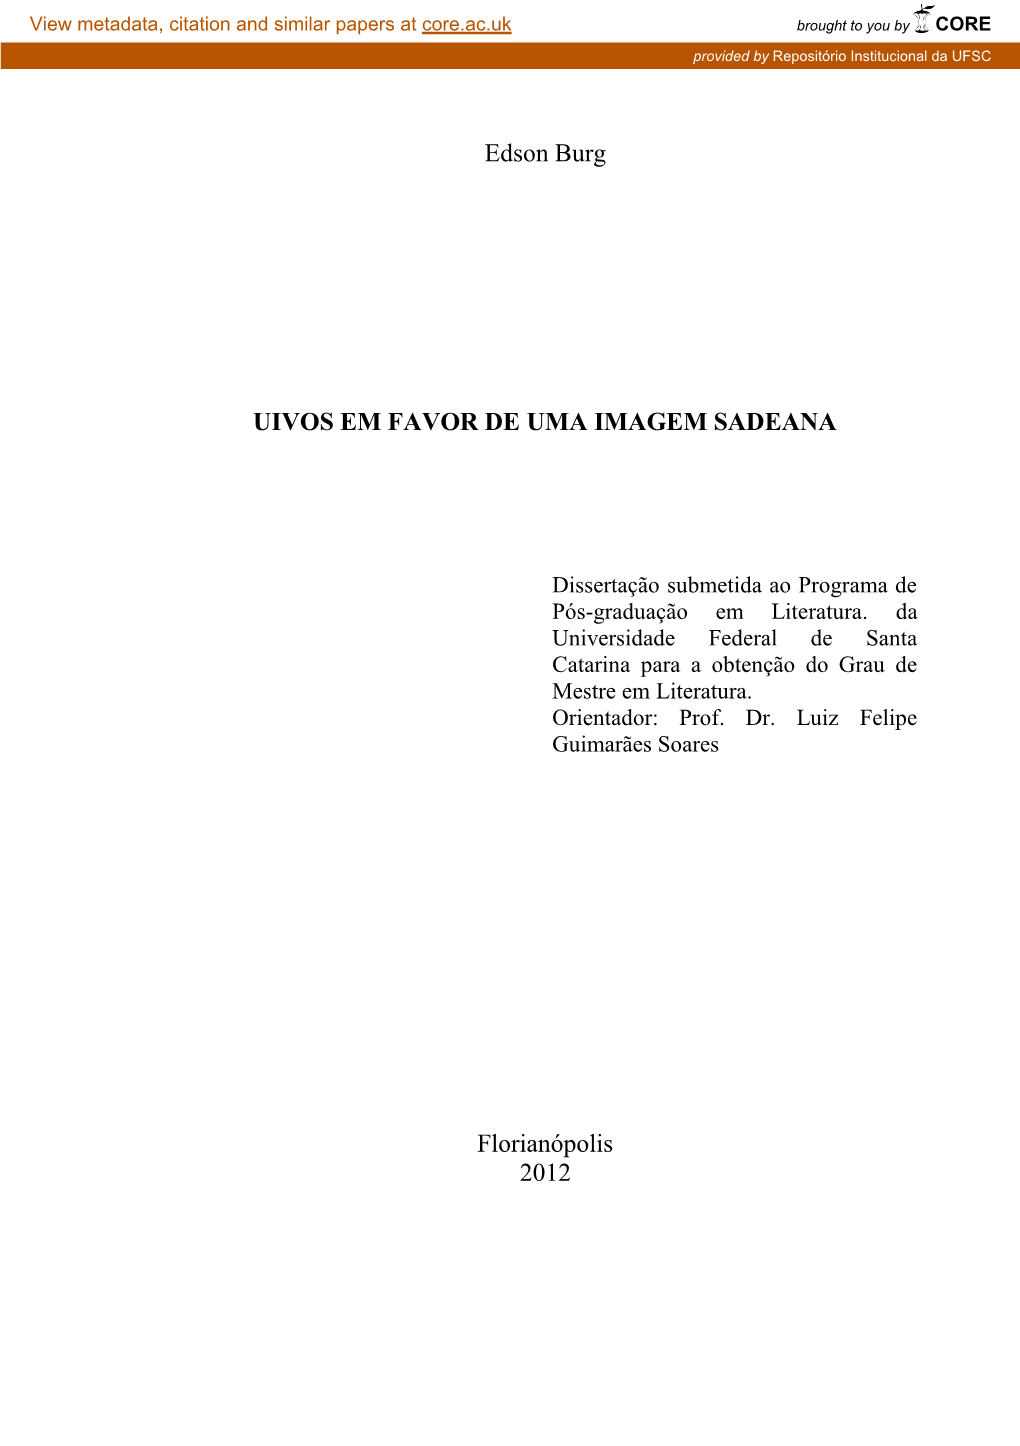 Universidade Federal De Santa Catarina Para a Obtenção Do Grau De Mestre Em Literatura